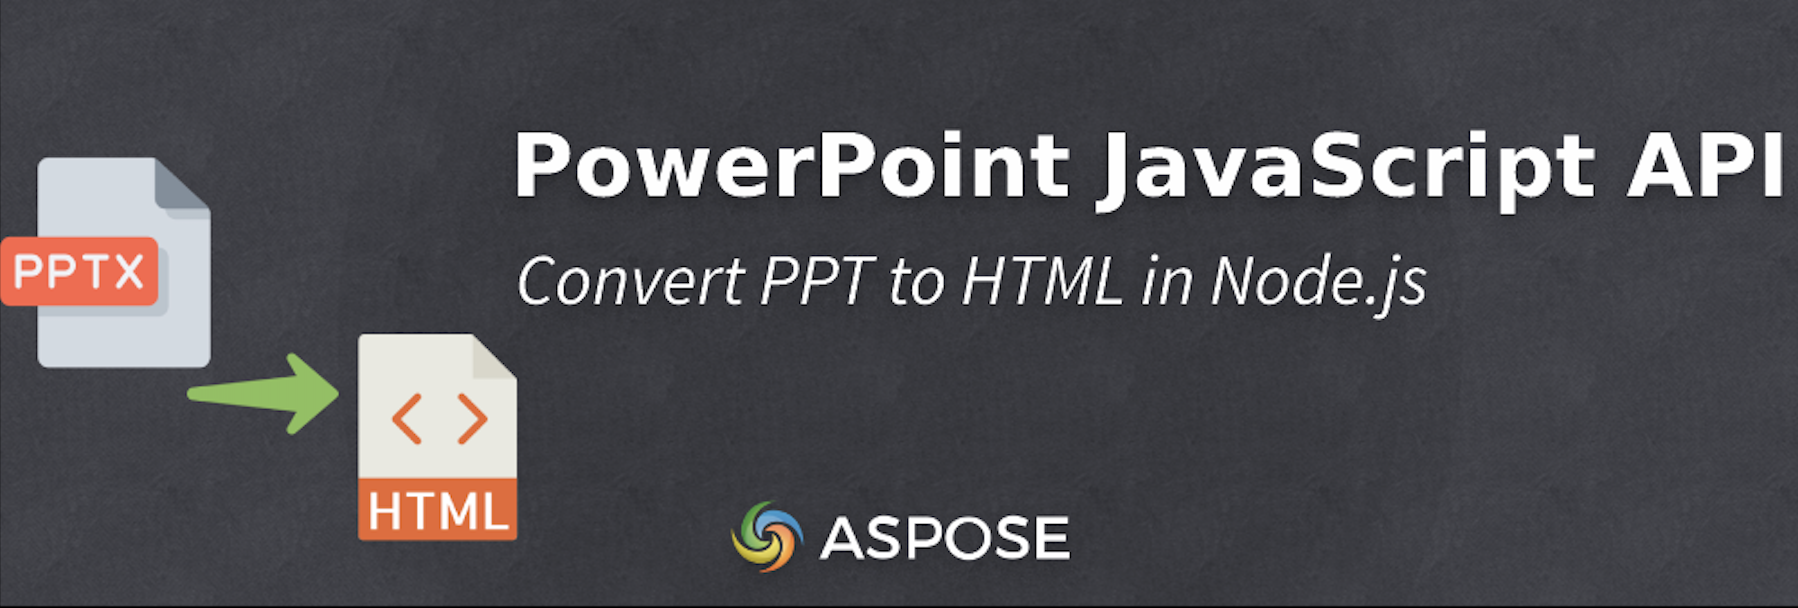 Преобразование PPT в HTML в Node.js — API JavaScript для PowerPoint